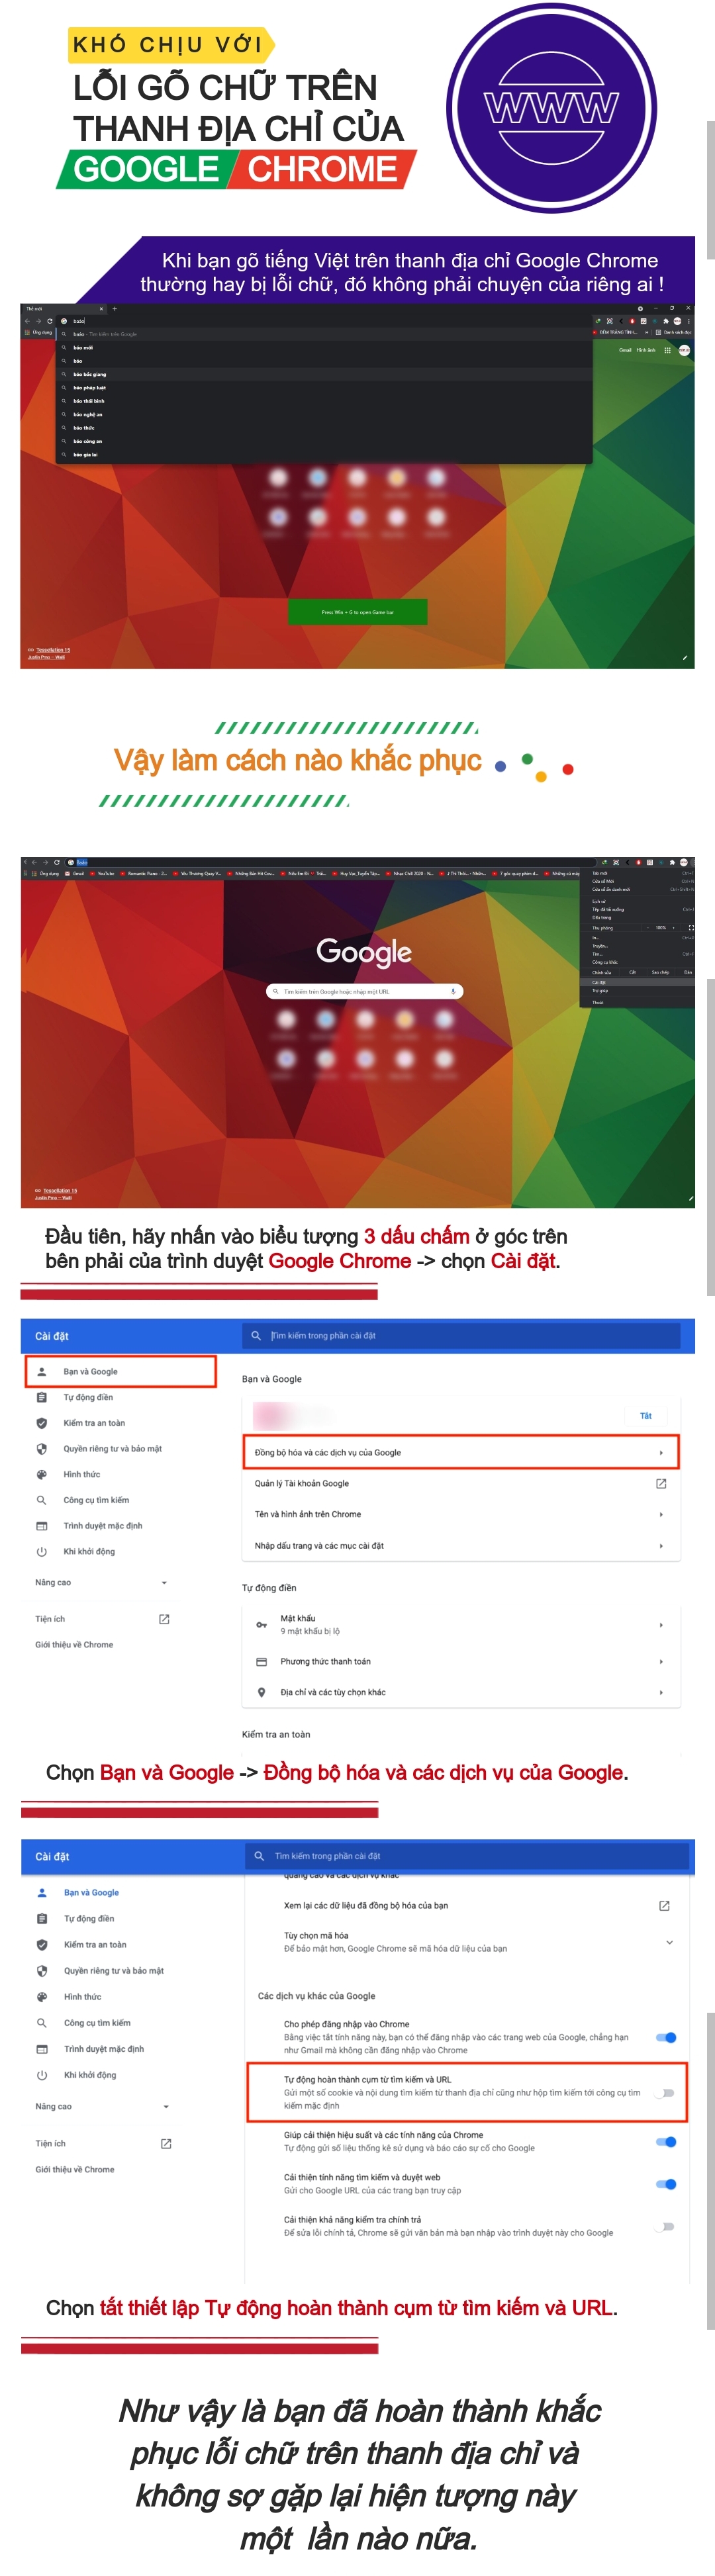 Sửa lỗi gõ chữ trên thanh địa chỉ của Google Chrome - 1